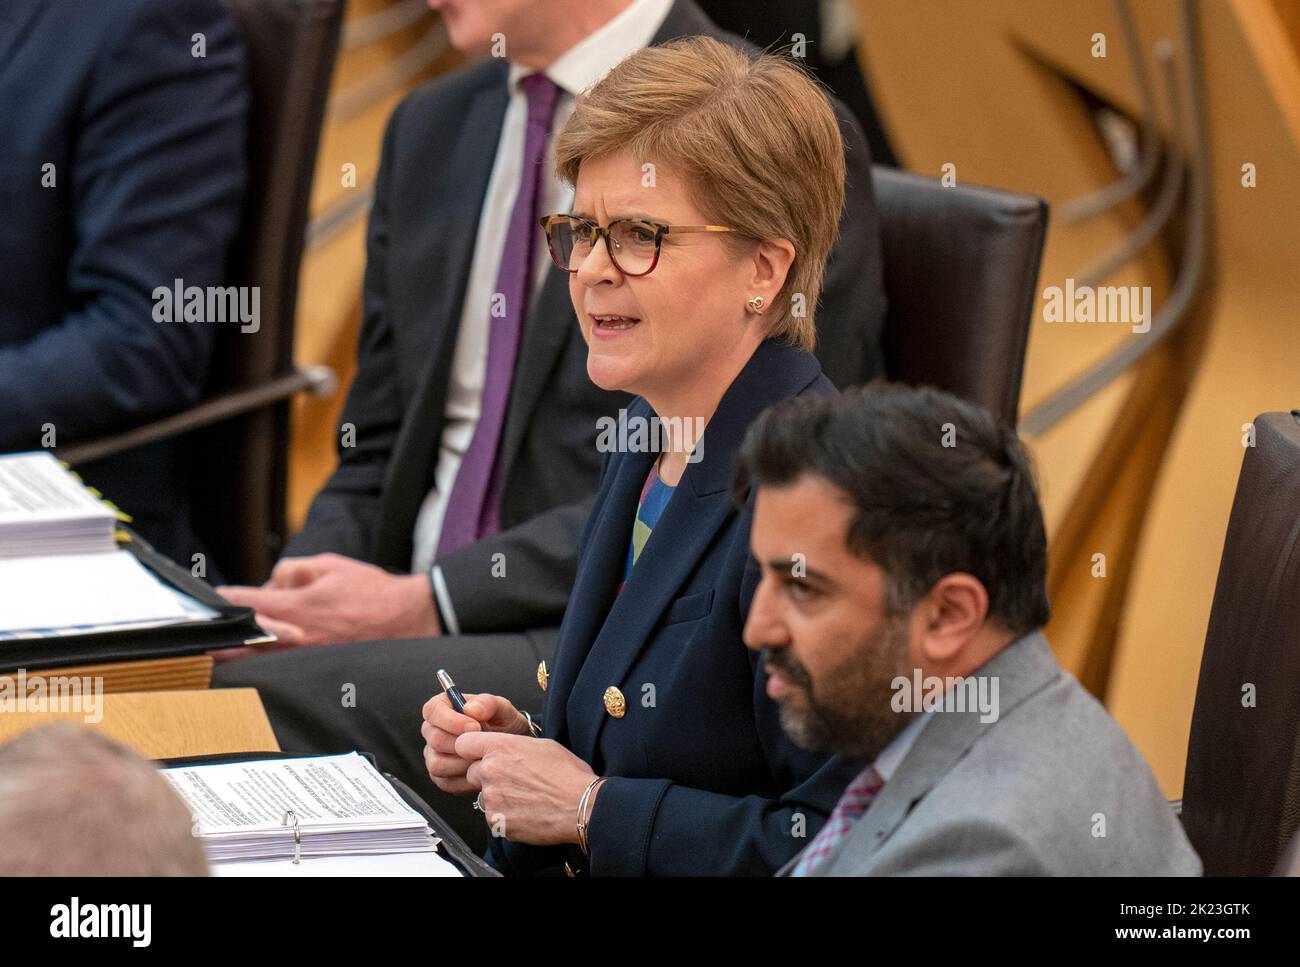 Primo Ministro Nicola Sturgeon durante le prime interrogazioni del Ministro (FMQ) nella camera di discussione del Parlamento scozzese a Edimburgo. Data immagine: Giovedì 22 settembre 2022. Foto Stock